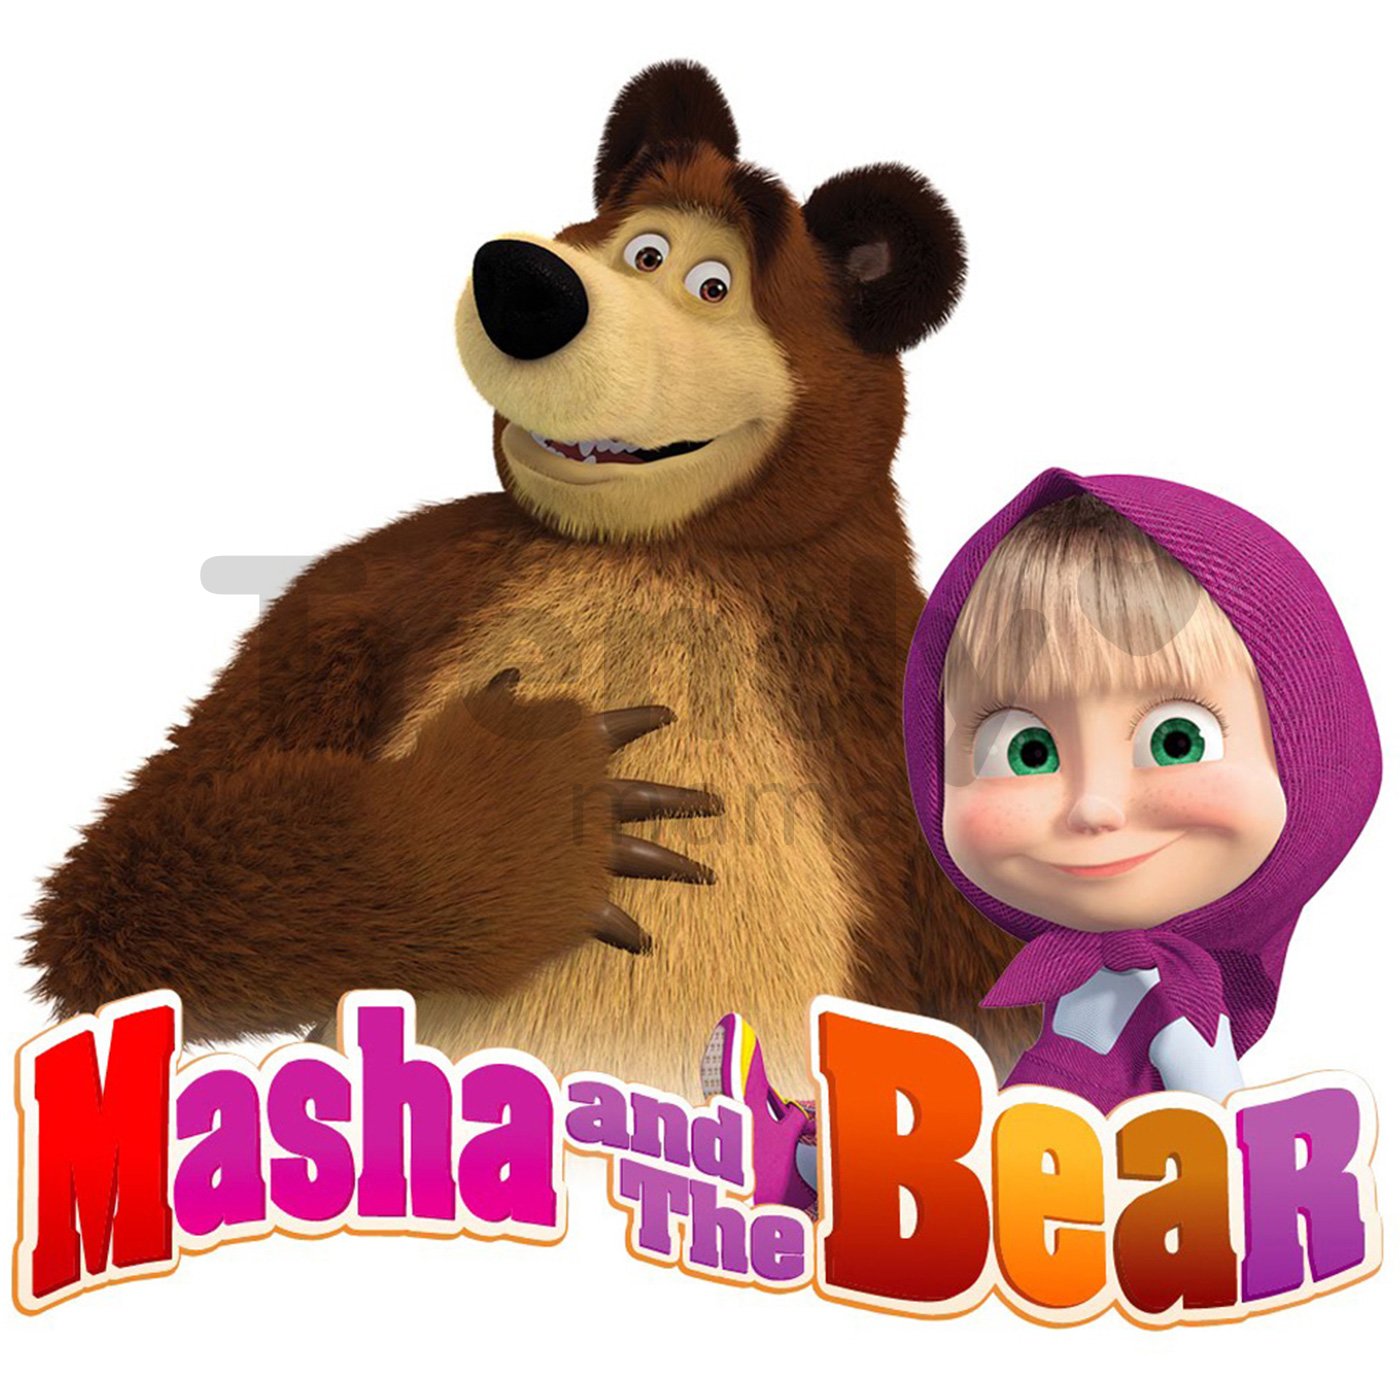 Почему маша и медведь вместе. Маша and the Bear. Маша и медведь картинки. Машка и медведь картинки. Маша и медведь картинки для детей.